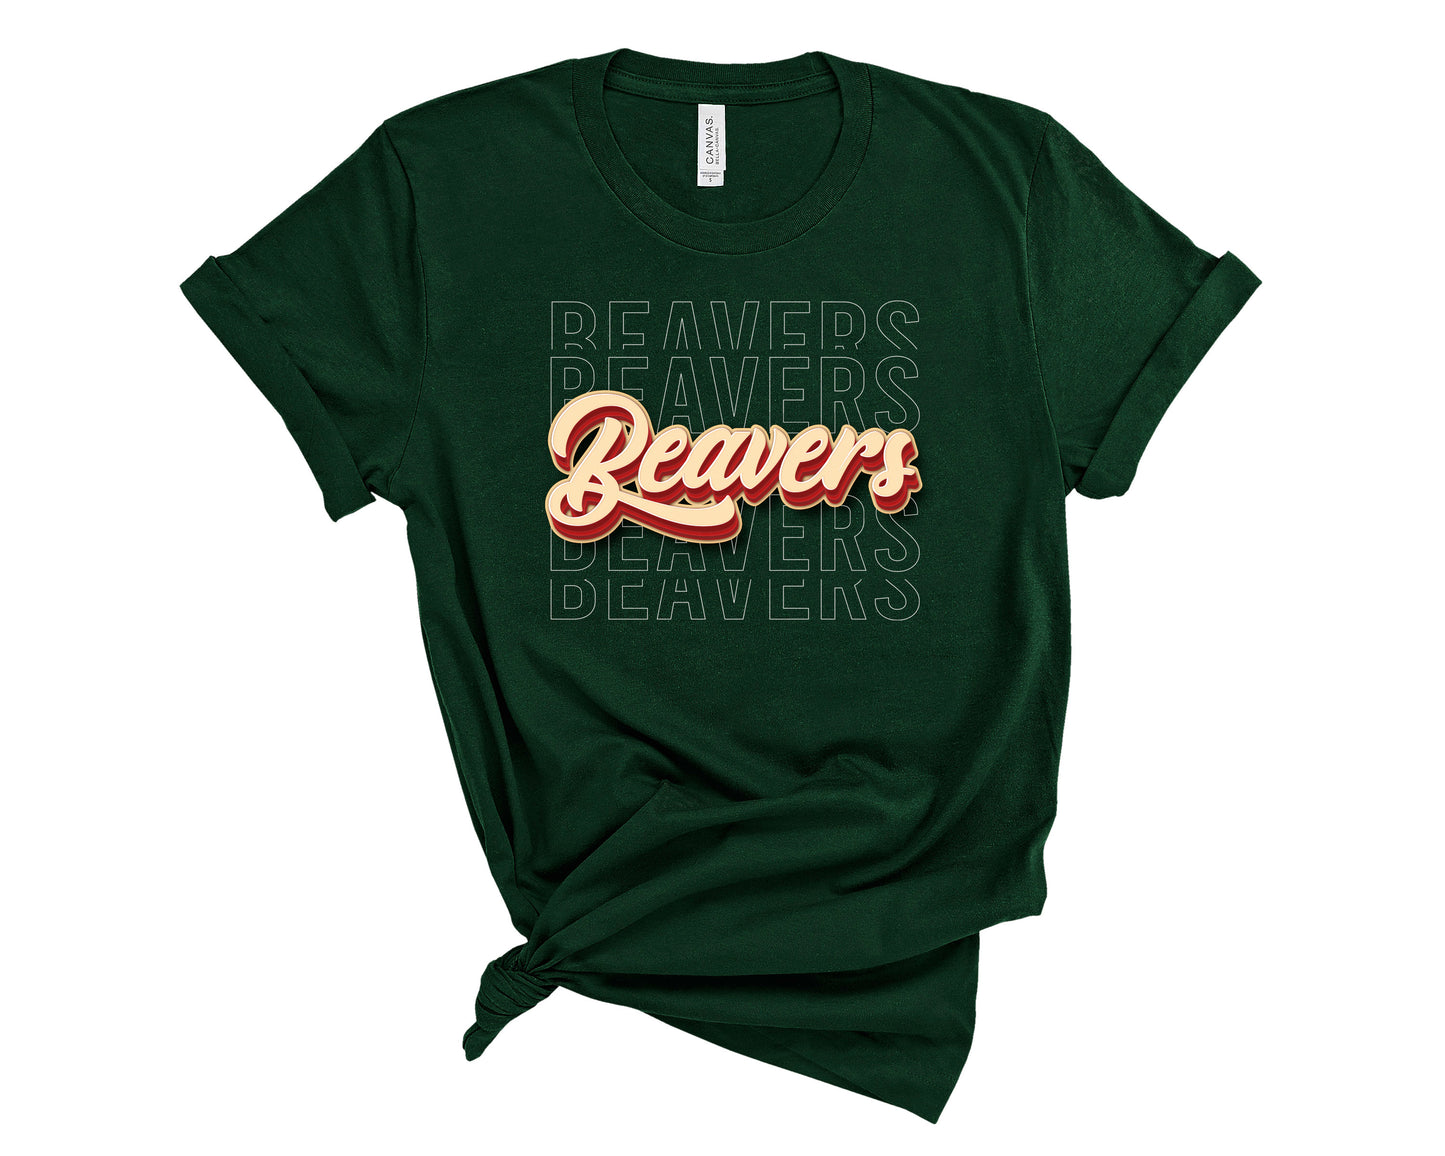 Short Sleeve Tee - Beaver River Fundraiser